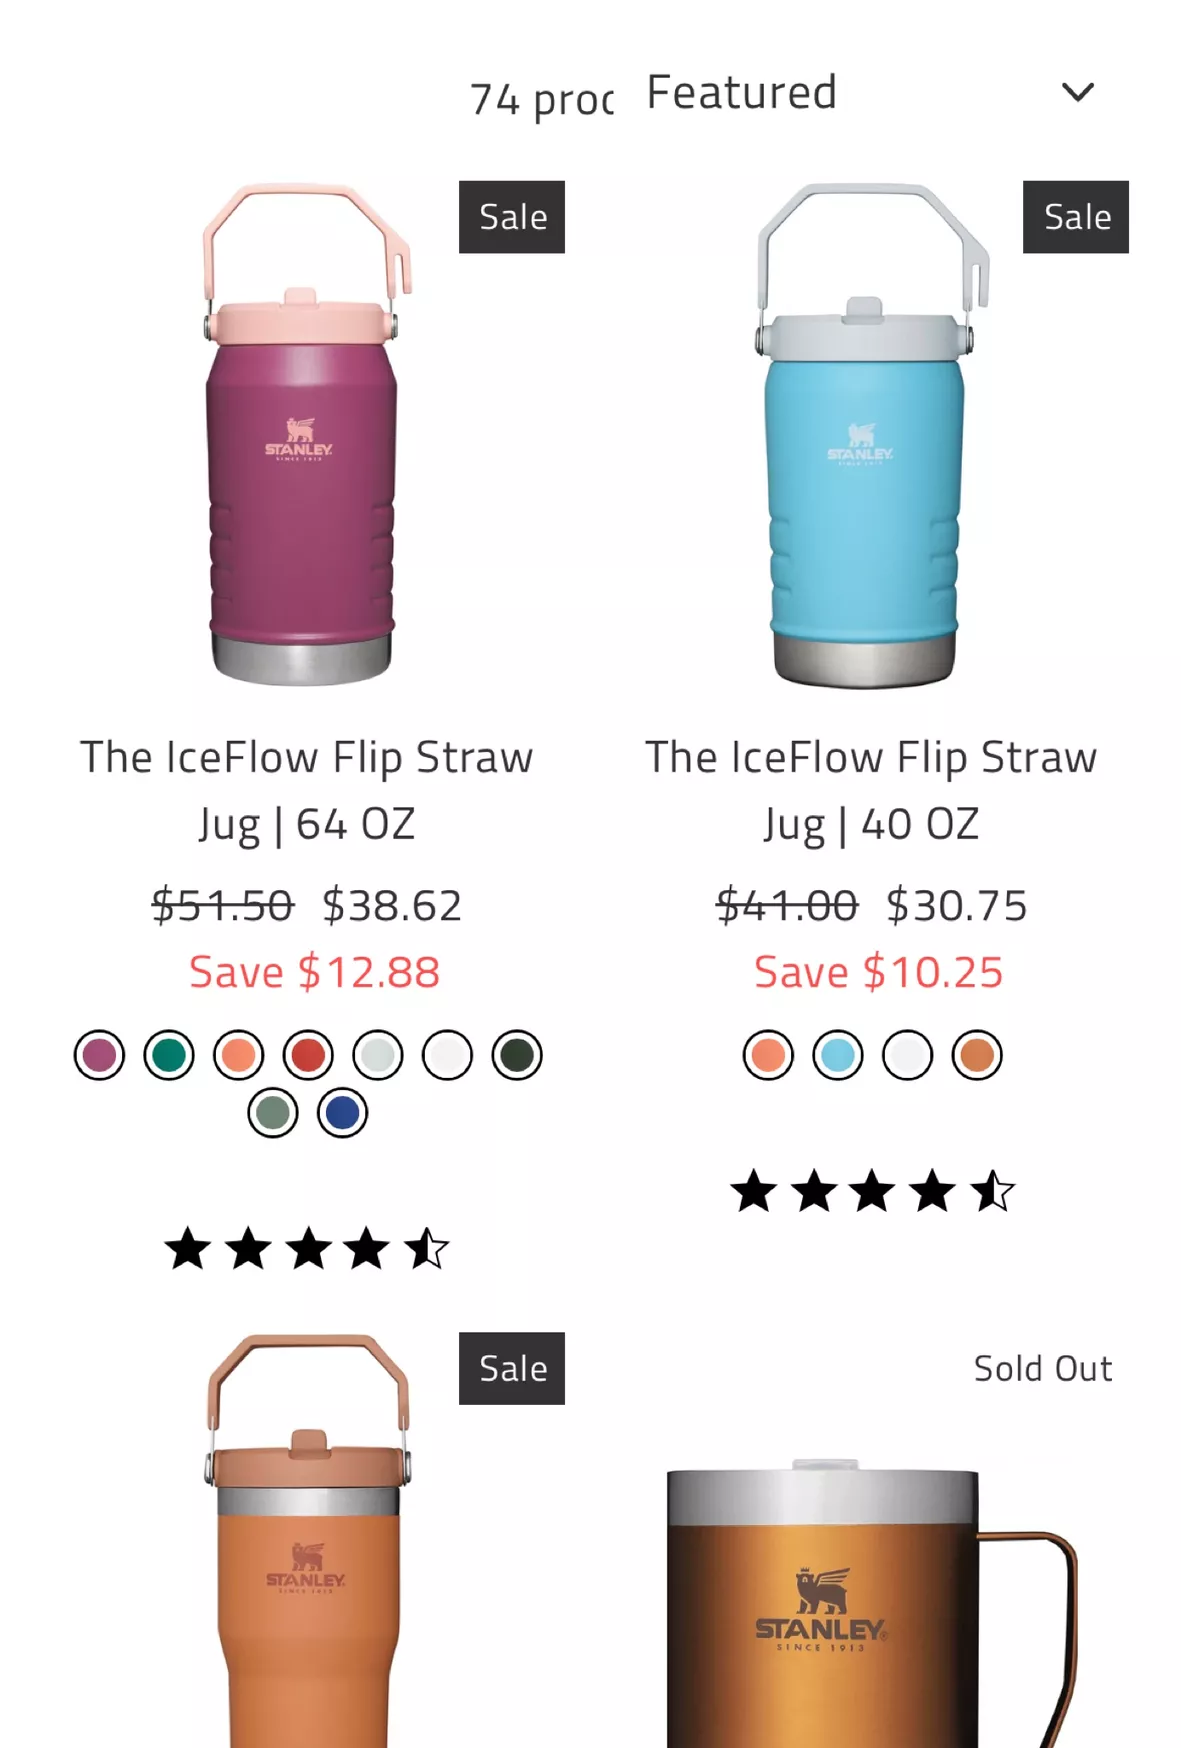 Stanley / The IceFlow Flip Straw Jug 64 oz